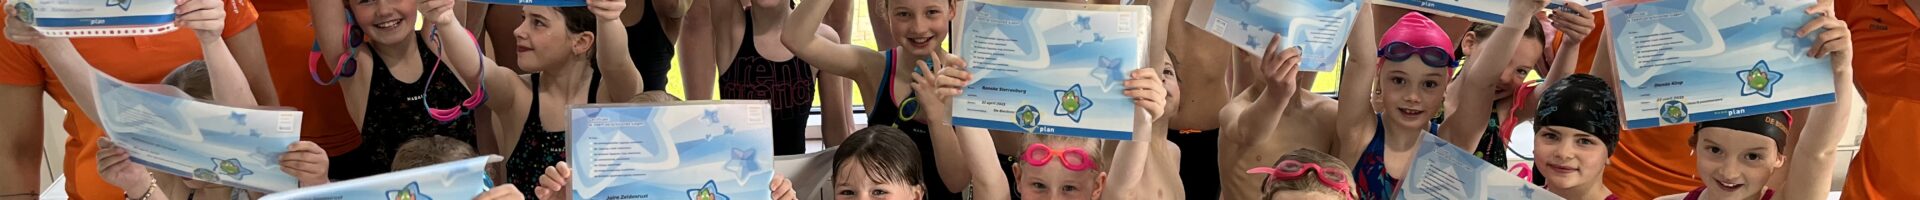 Sterrenplan Biesboschzwemmers weer succes